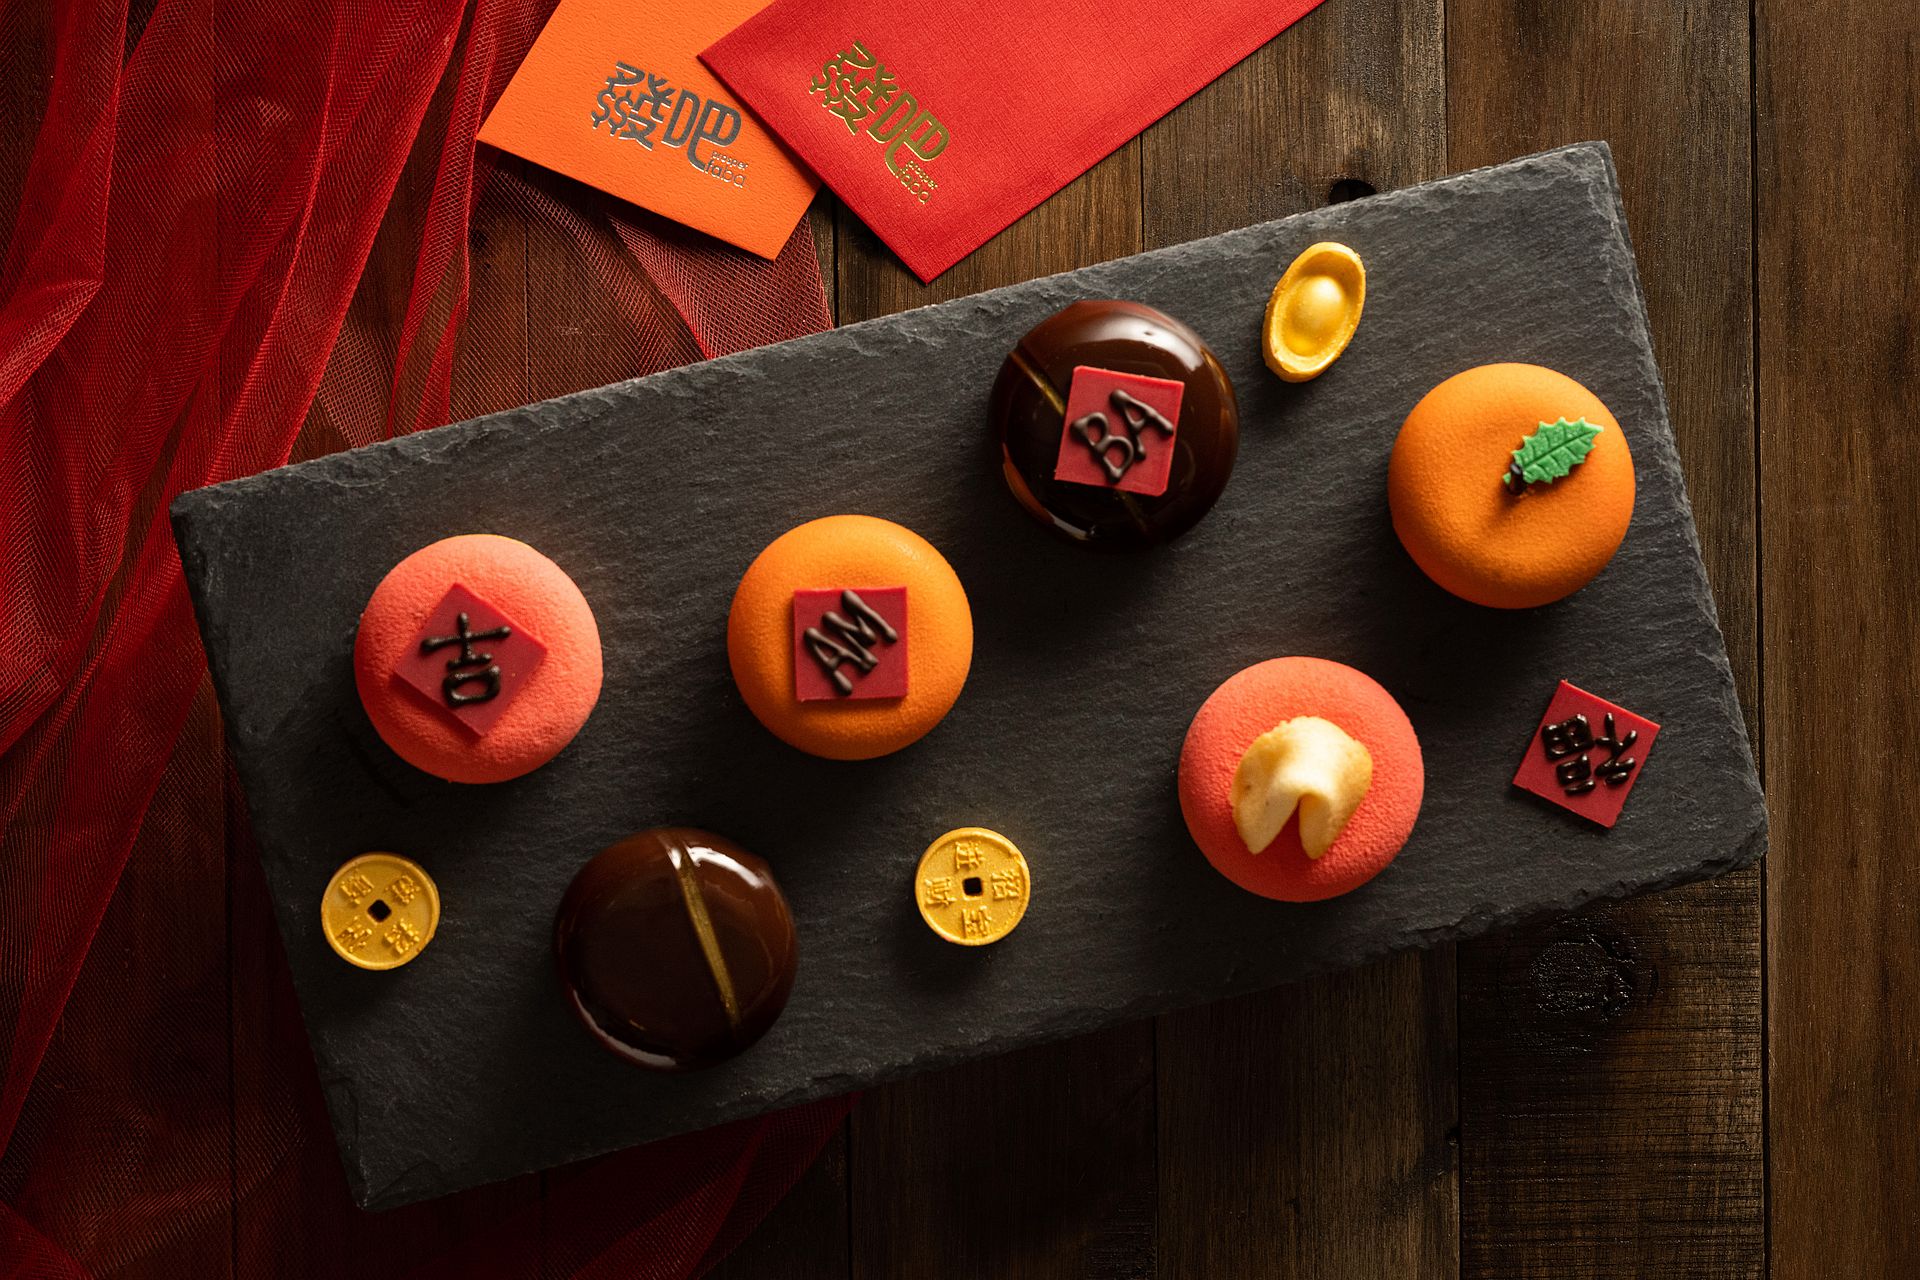 amba Taipei Zhongshan hotel Buttermilk restaurant 2022 Chinese New Year Cakes Gourmet Gift